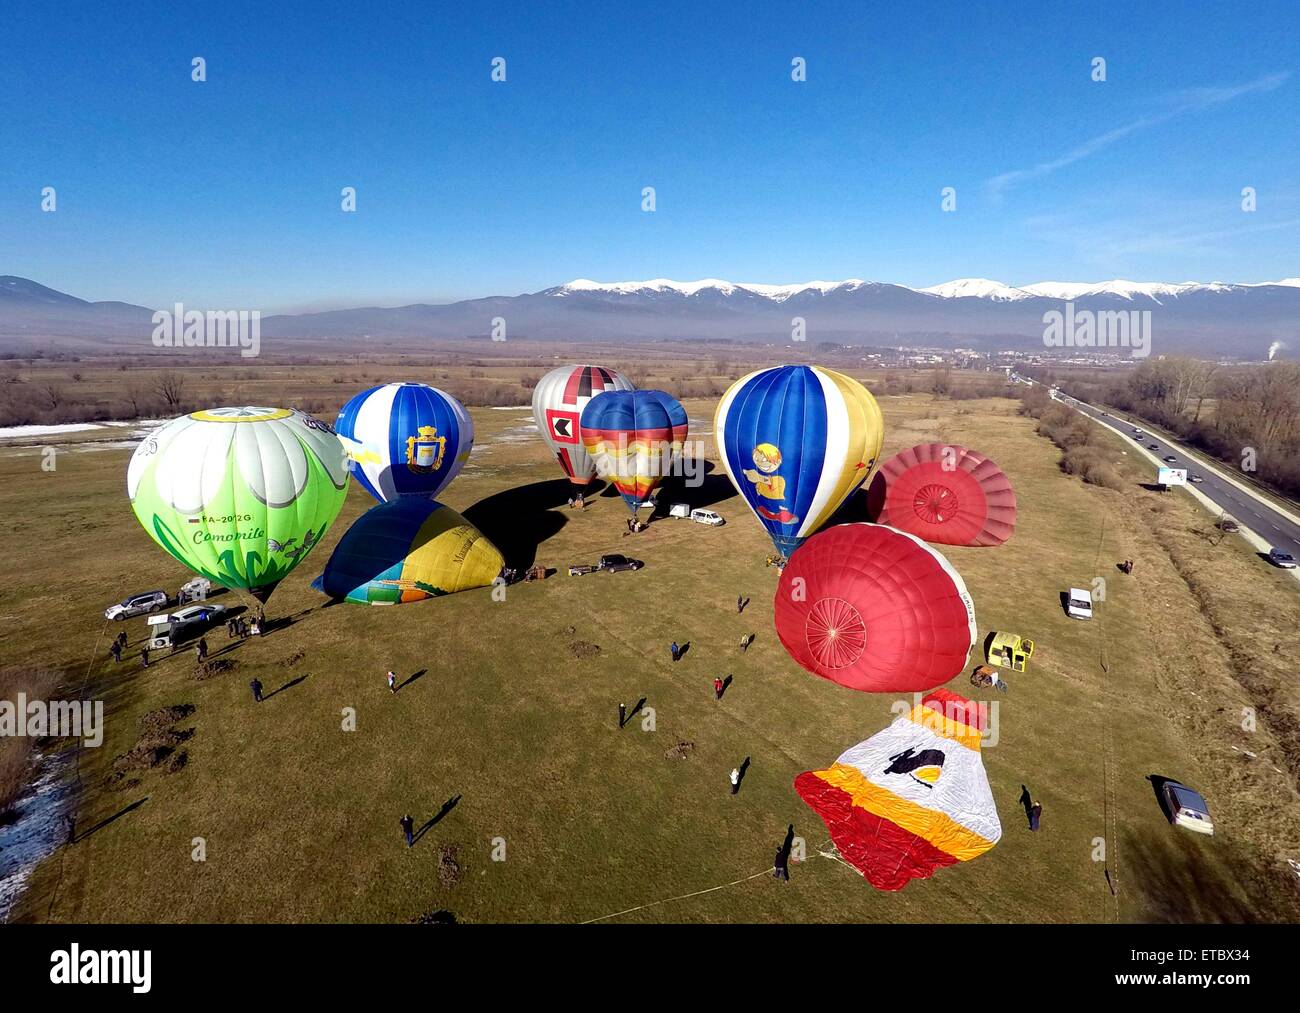 globos de aire caliente sobrevuelan el cielo, cerca de la ciudad de Bansko, a unos 130 kms al sur de la capital Sofía durante una fiesta internacional de globos